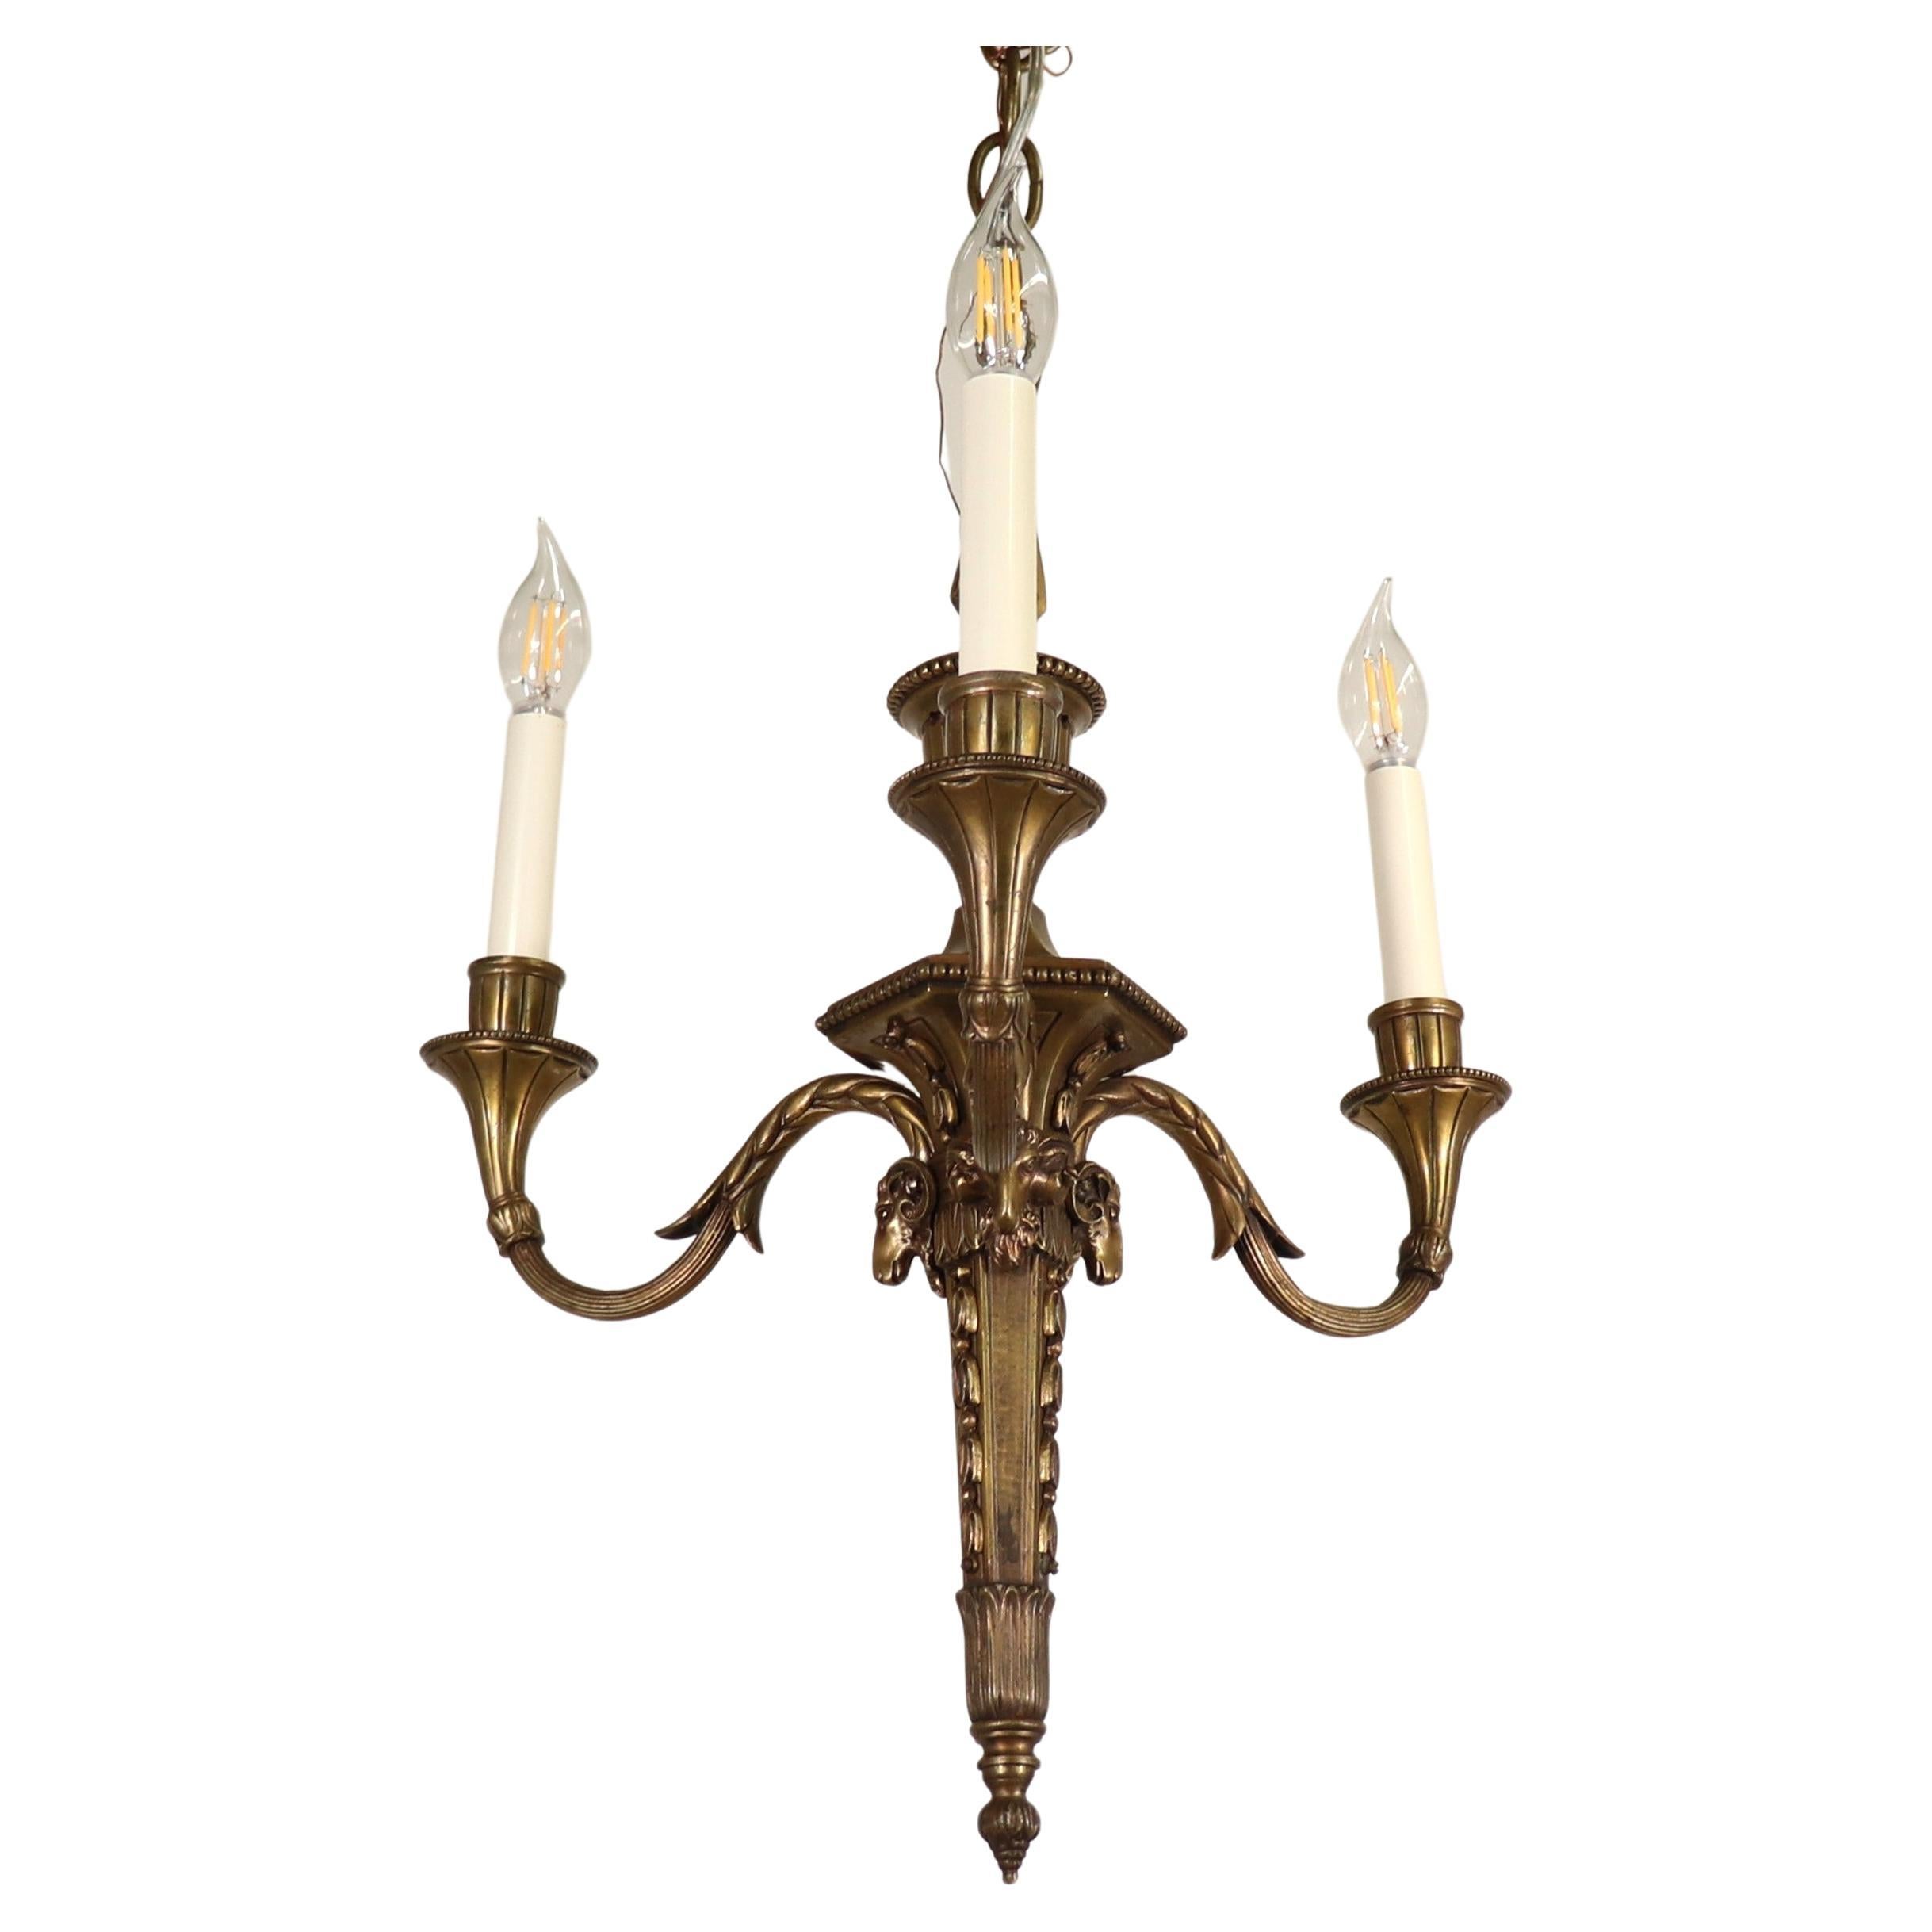 Lustre flambeau néoclassique français du 19ème siècle de style Louis XVI en bronze